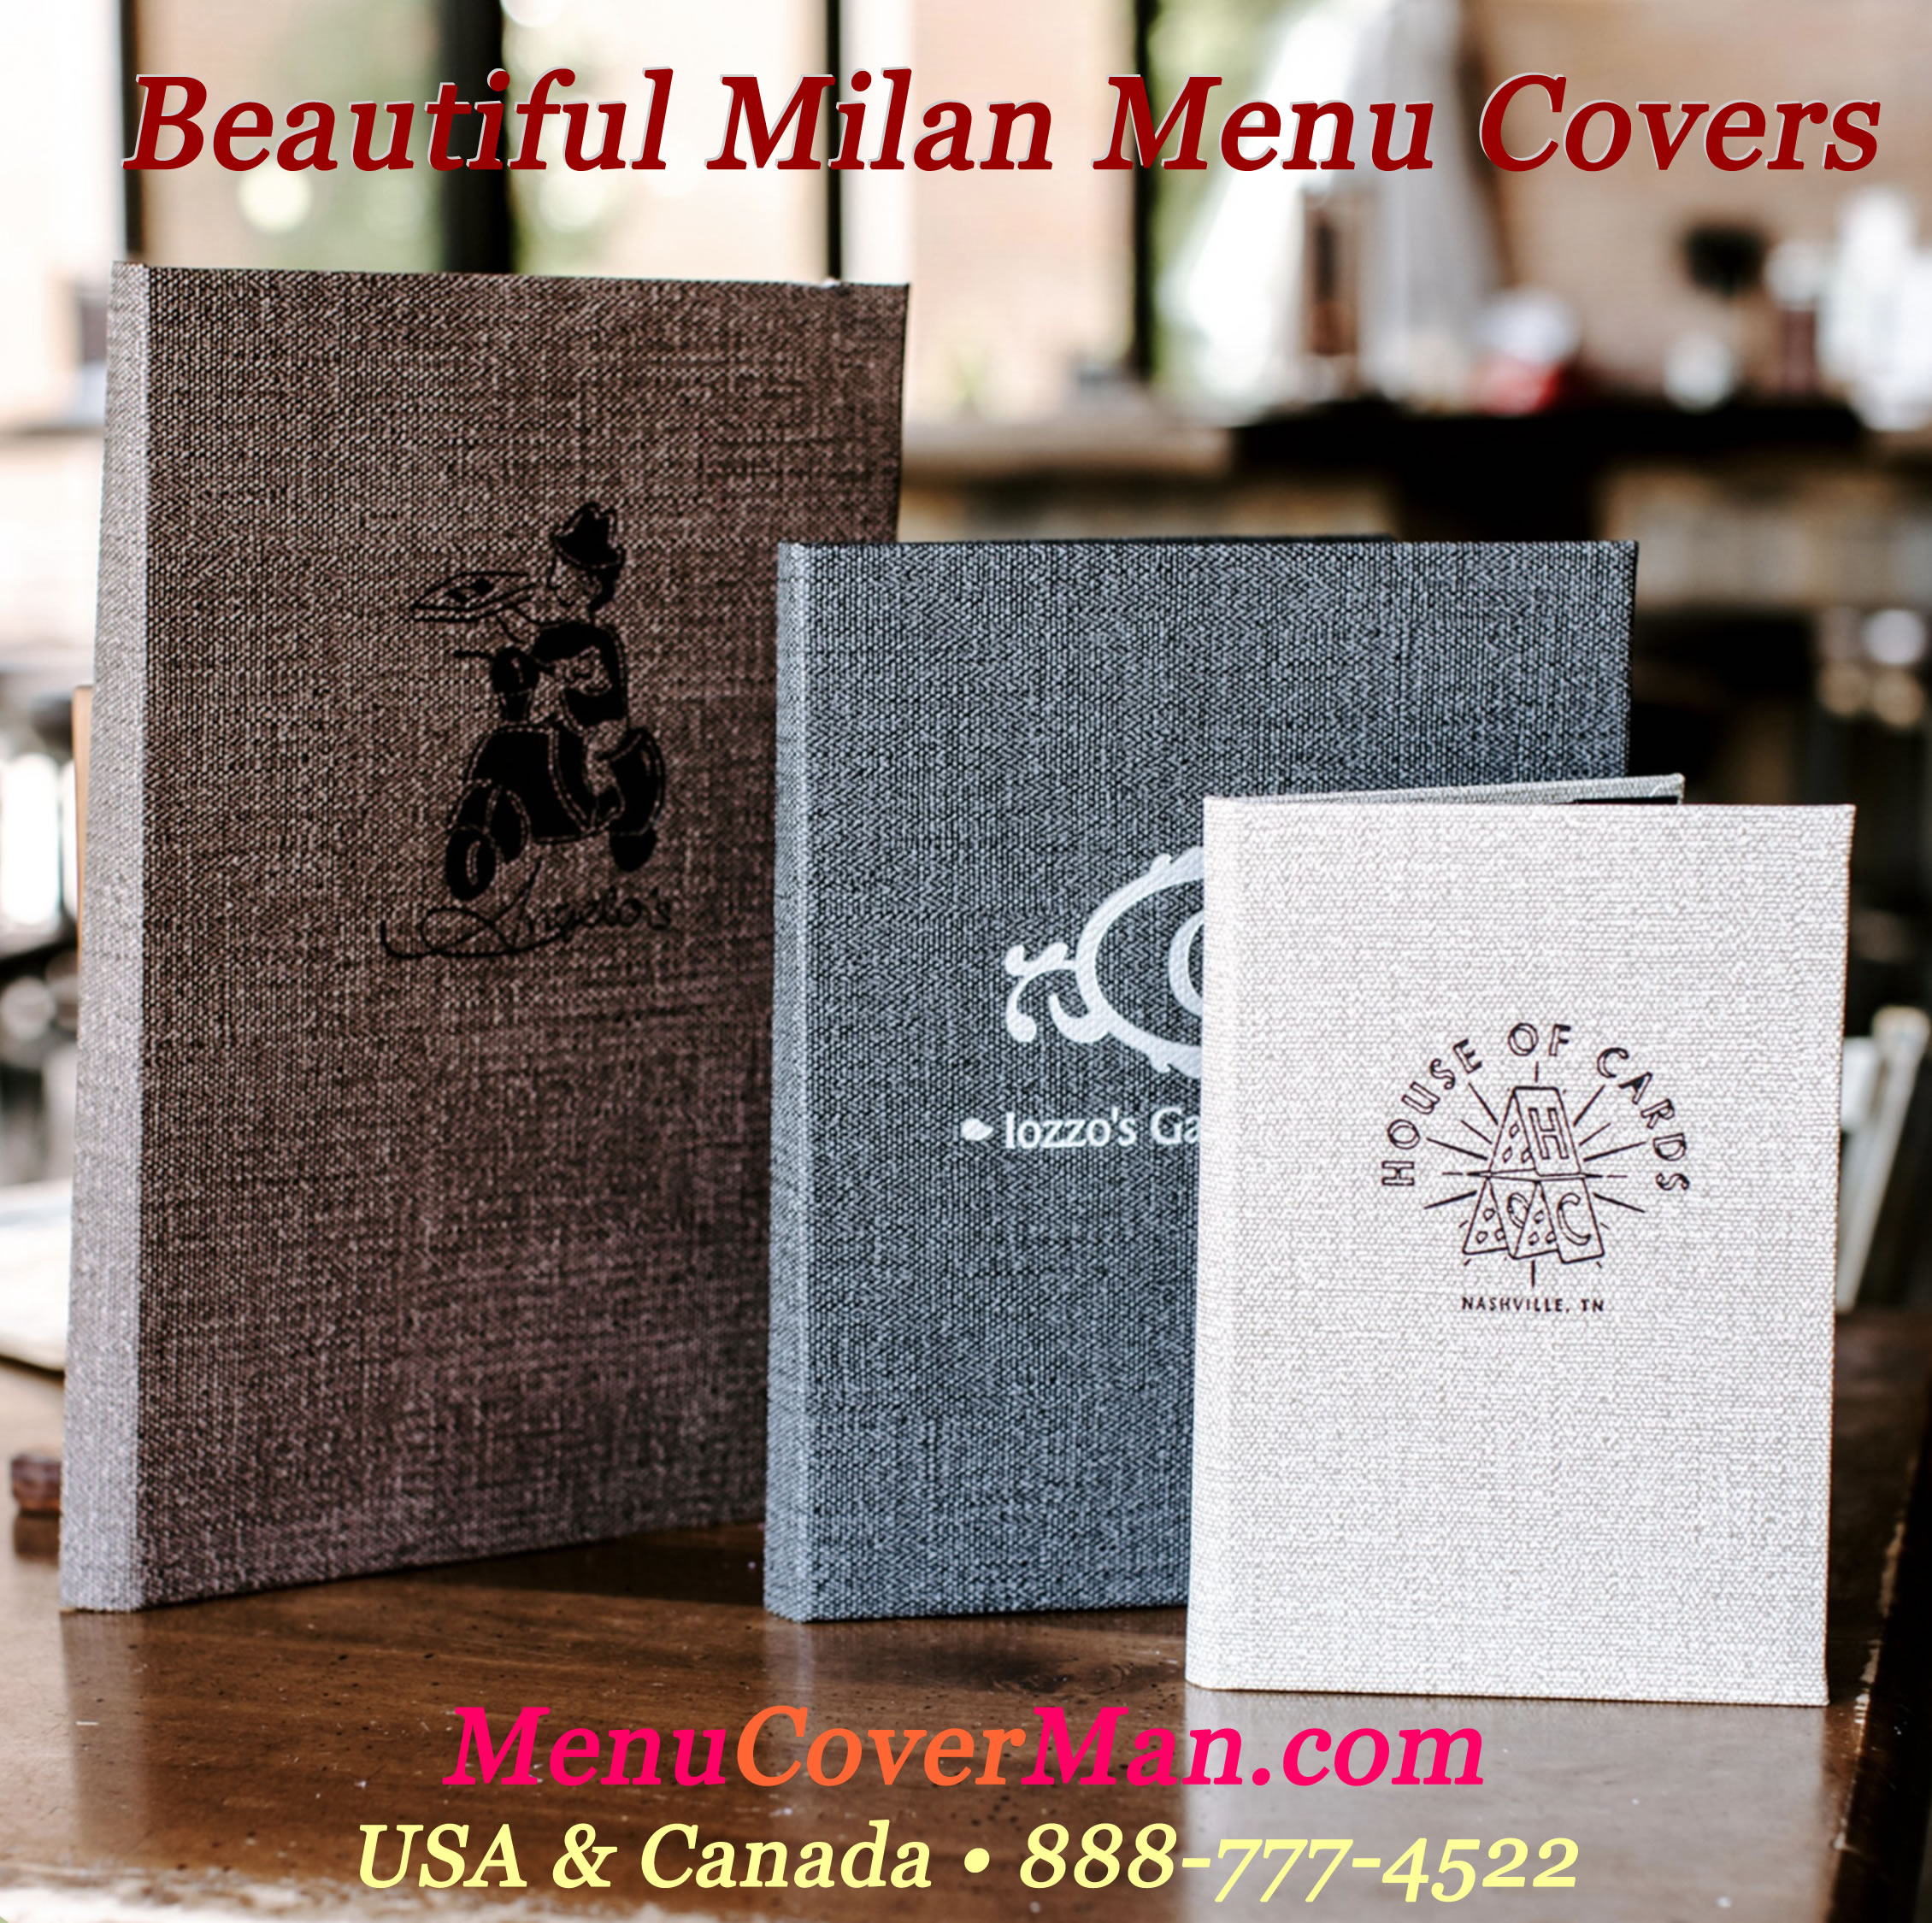 Beautiful Milan Menu Covers from MenuCoverMan.com